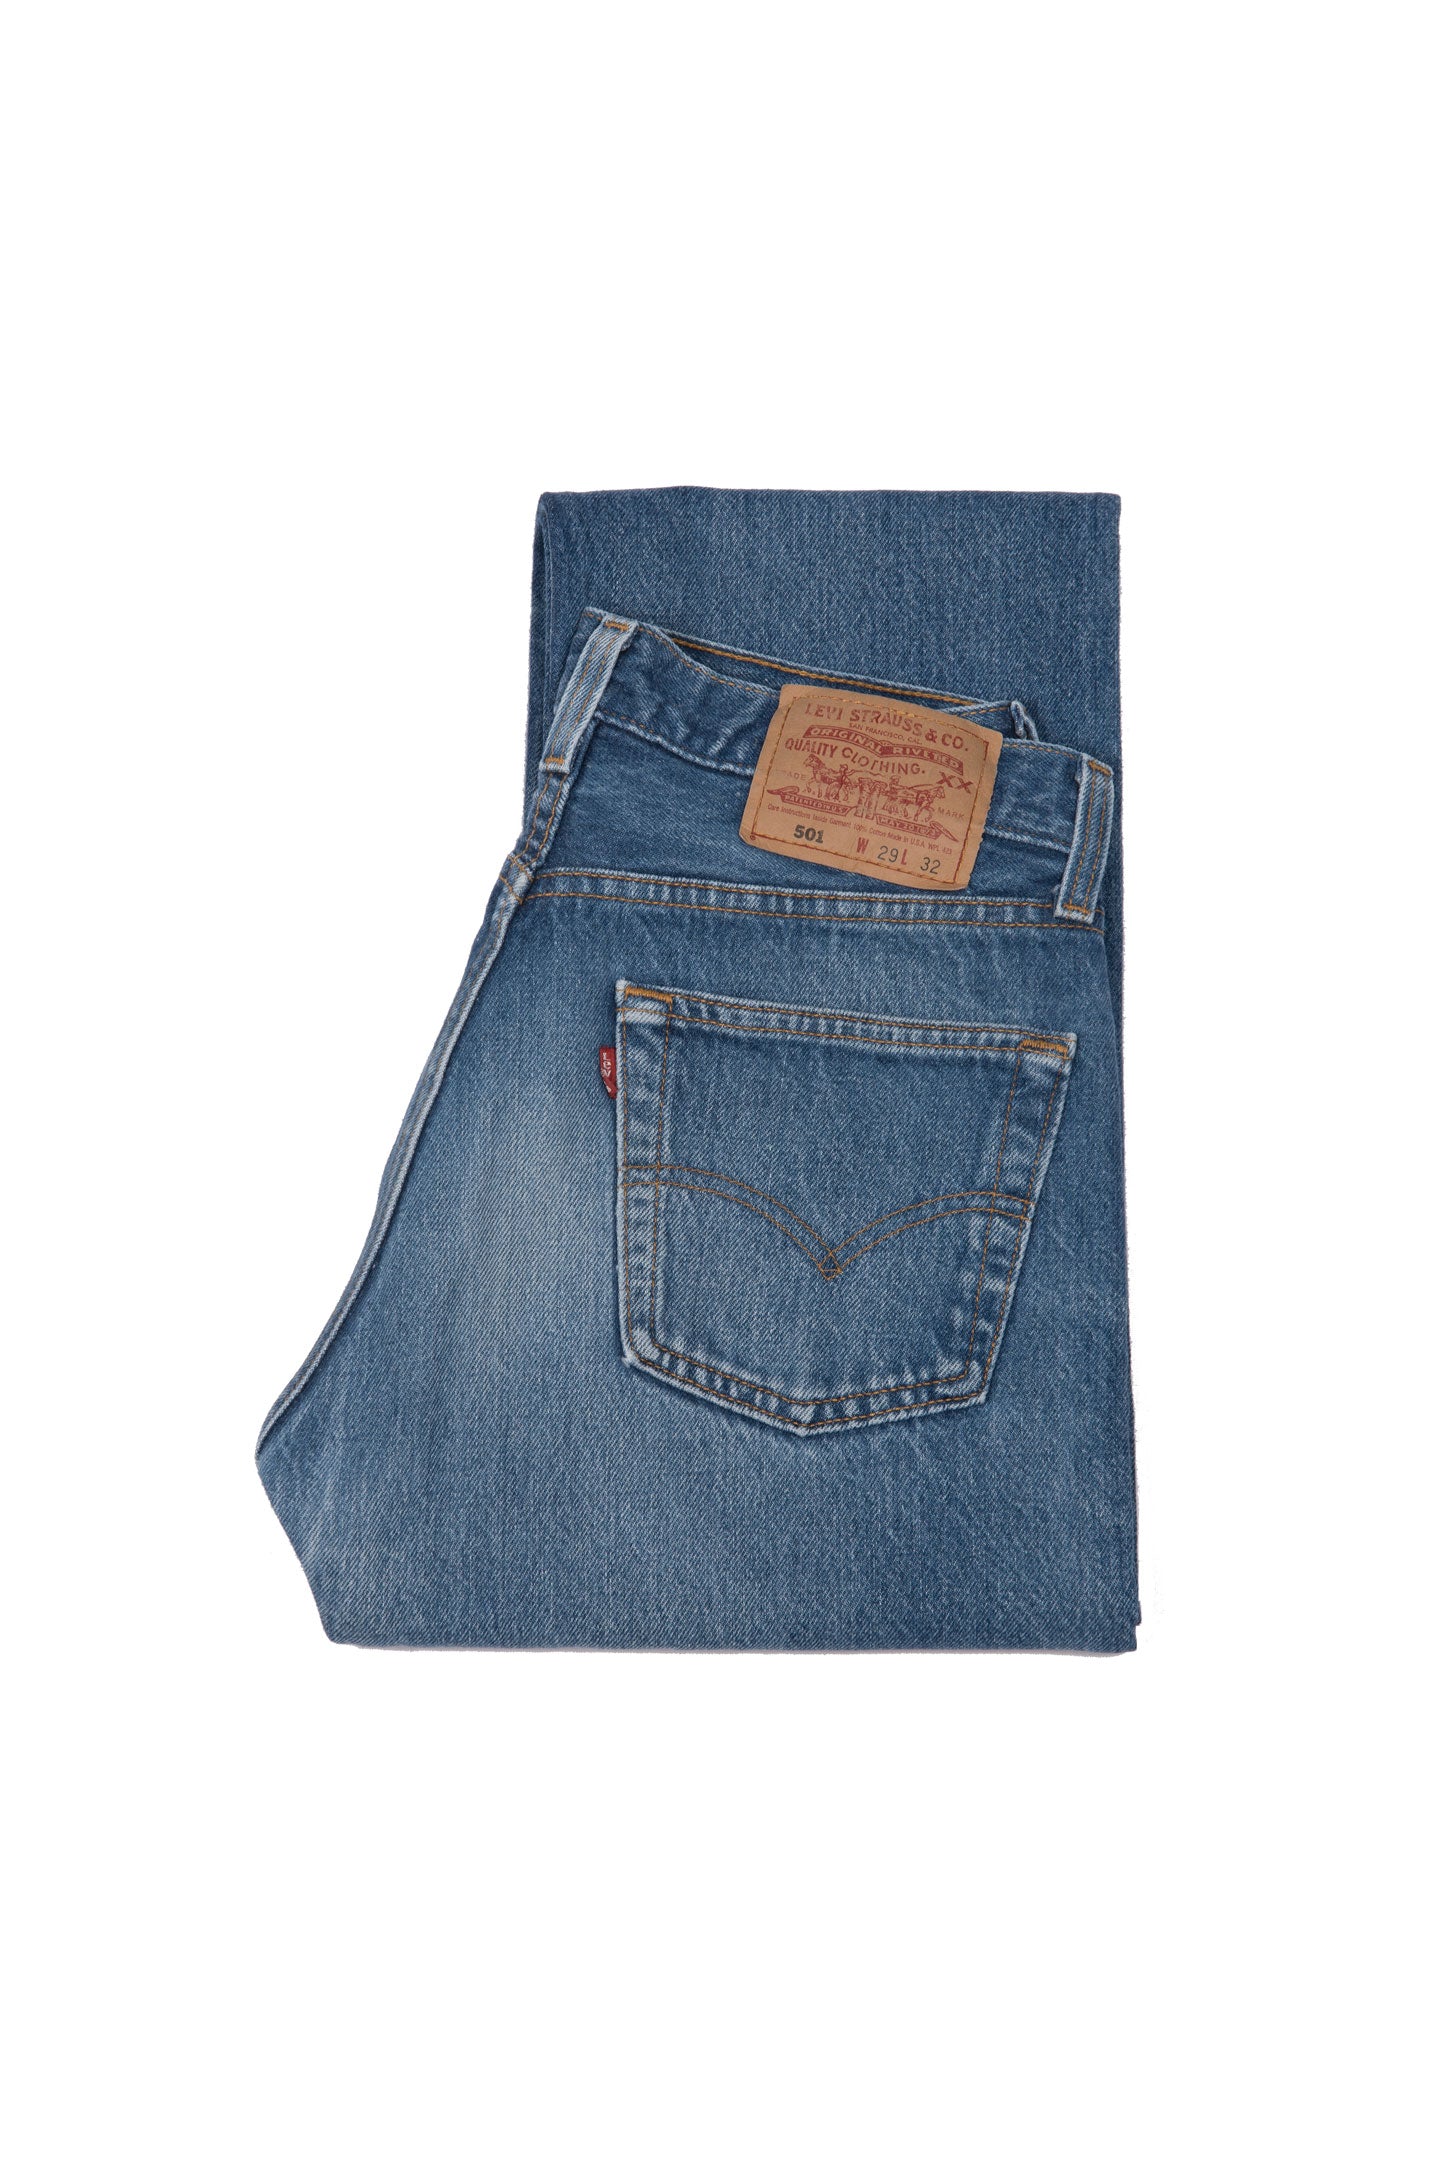 Levi's 501 Original Fit Jeans Blue, Second Hand